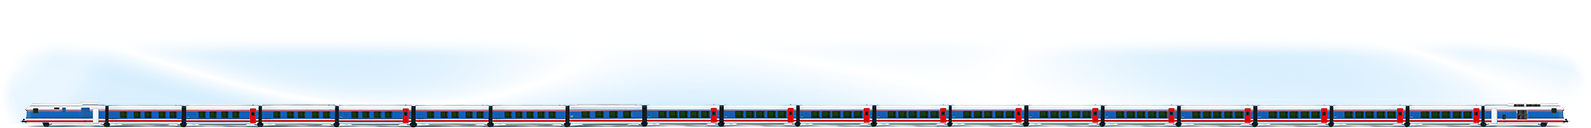 схема вагонов поезда стриж